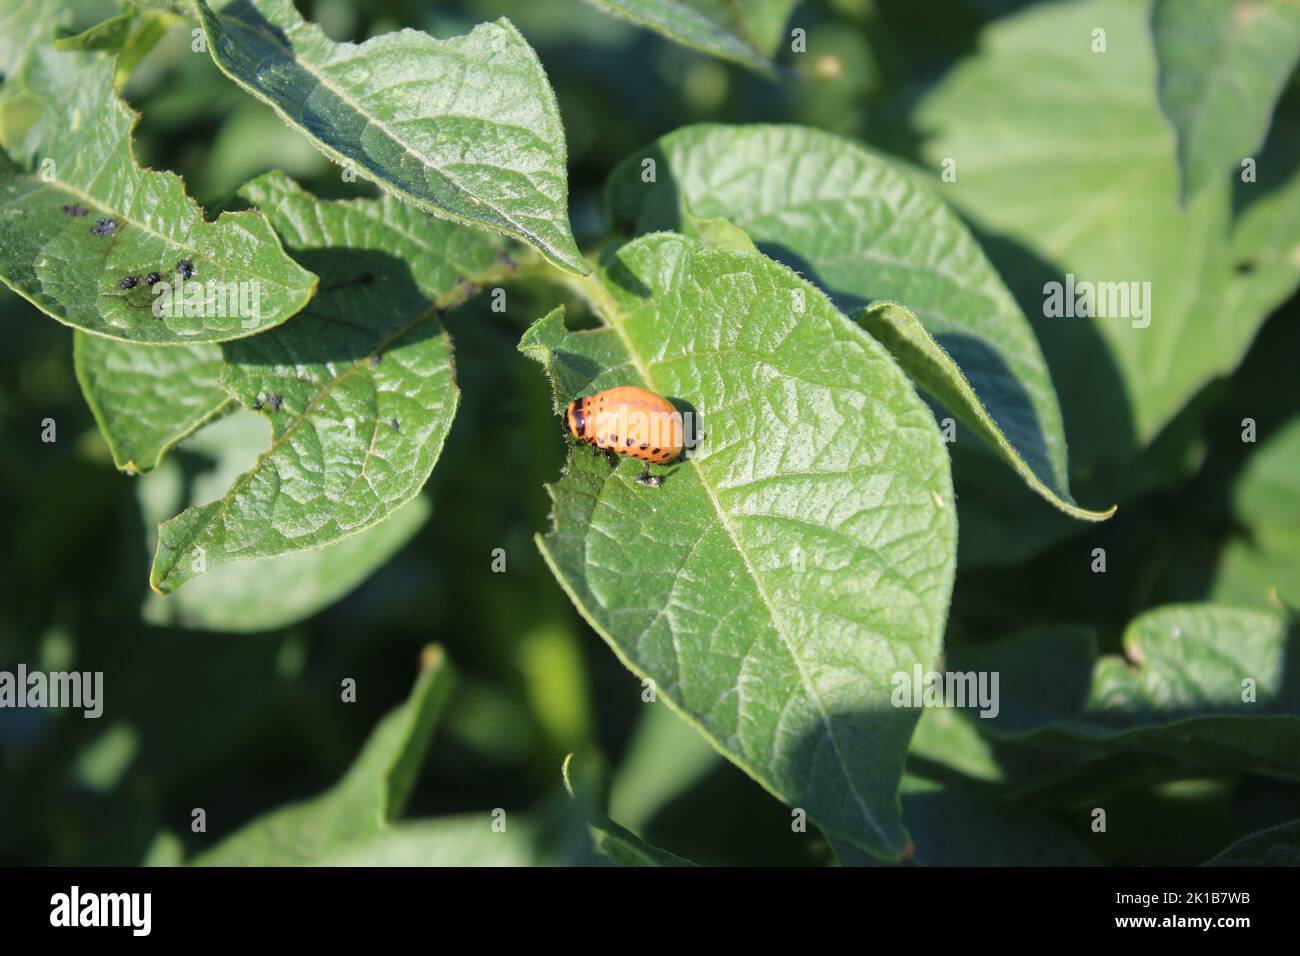 Le coléoptère de la pomme de terre du Colorado est un insecte orange vif. Insectes sur les feuilles de l'arbre de la pomme de terre. Feuillage en arrière-plan. Photo de lumière du jour. Jour ensoleillé. Banque D'Images